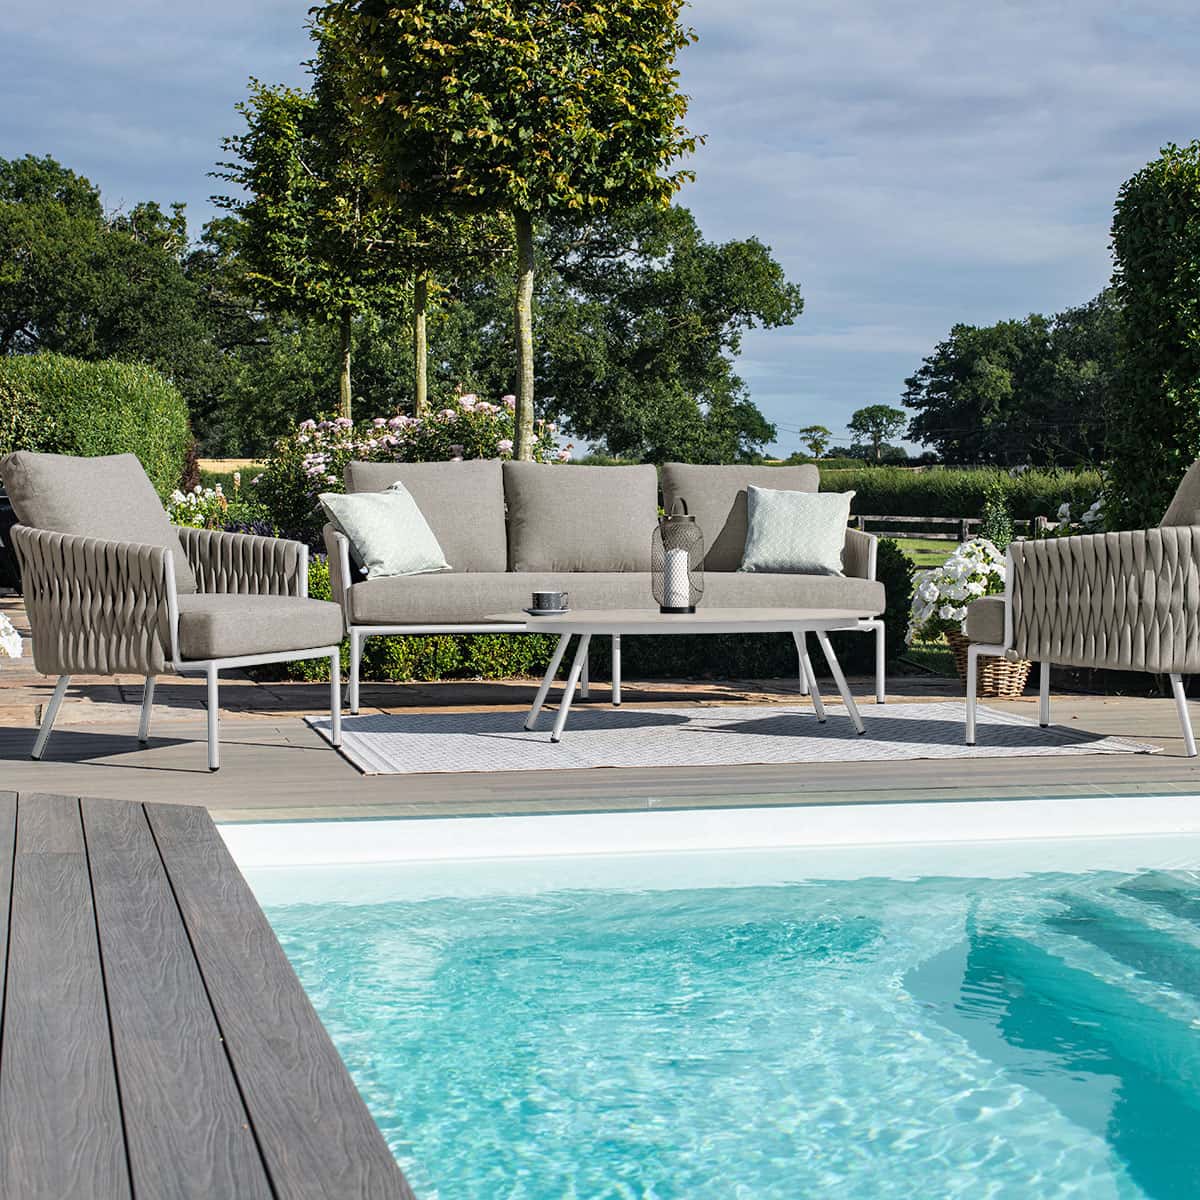 Marina 3 Seat Sofa Set Sandstone / Beige Rope and Aluminium Outdoor Furniture #colour_sandstone